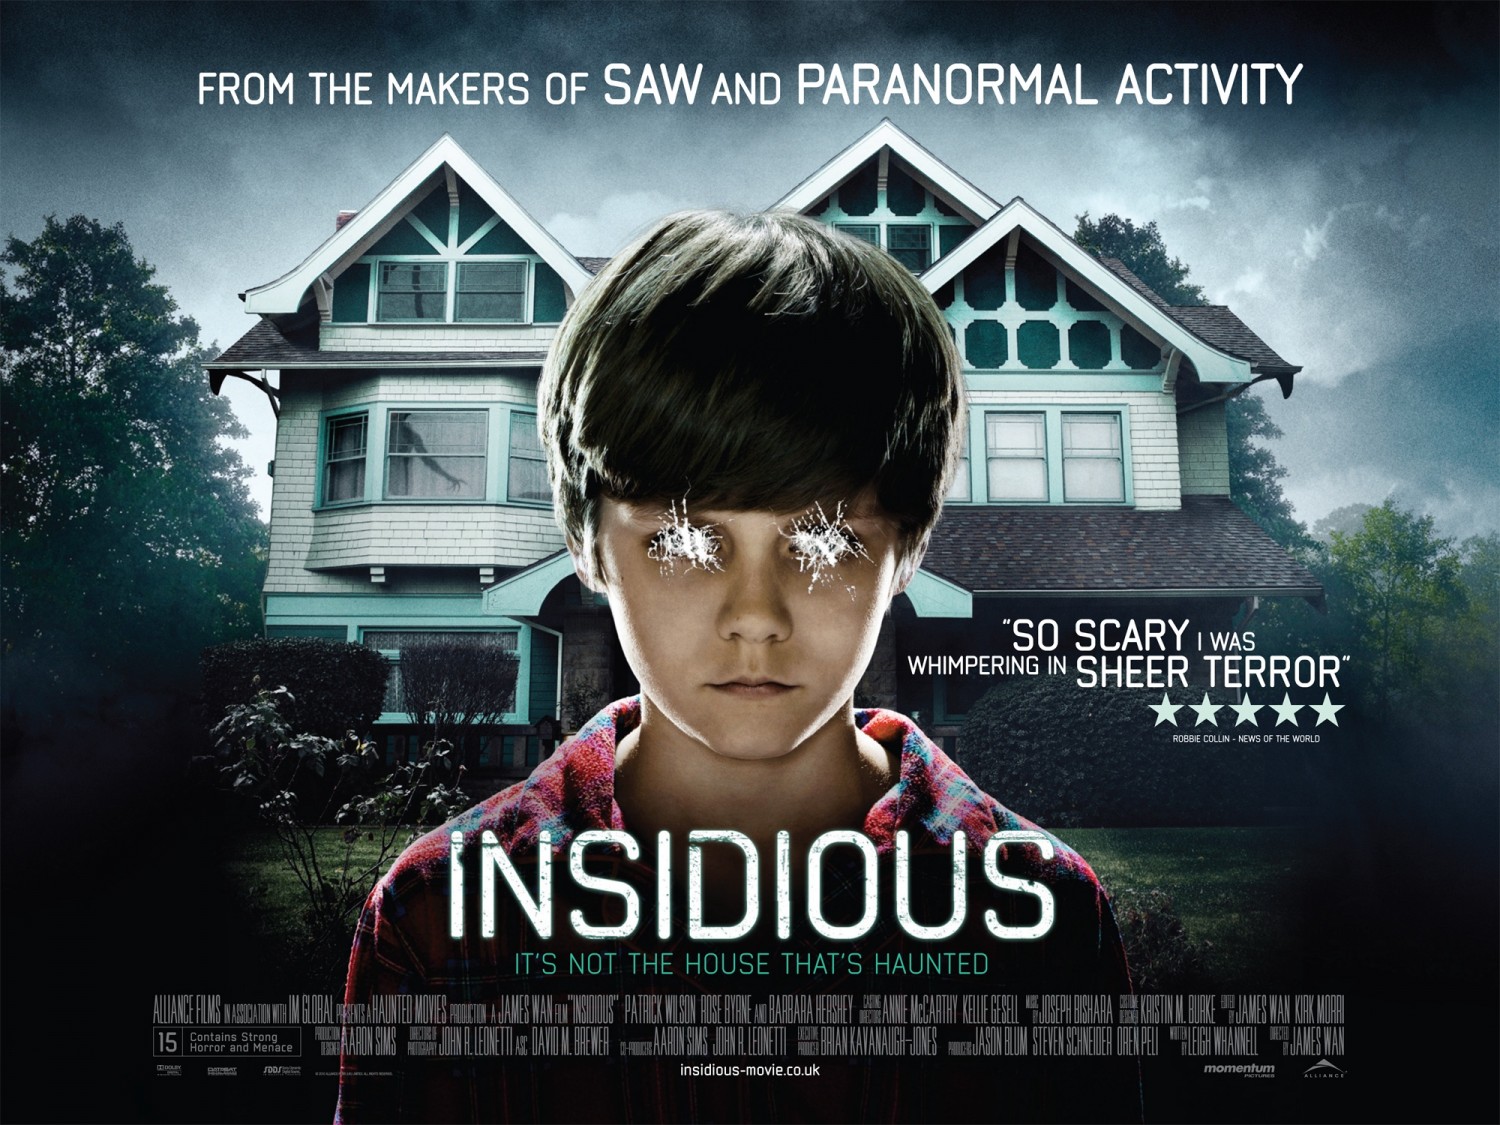 Insidious (2 of 9) Extra Large Movie Poster Image IMP Awards